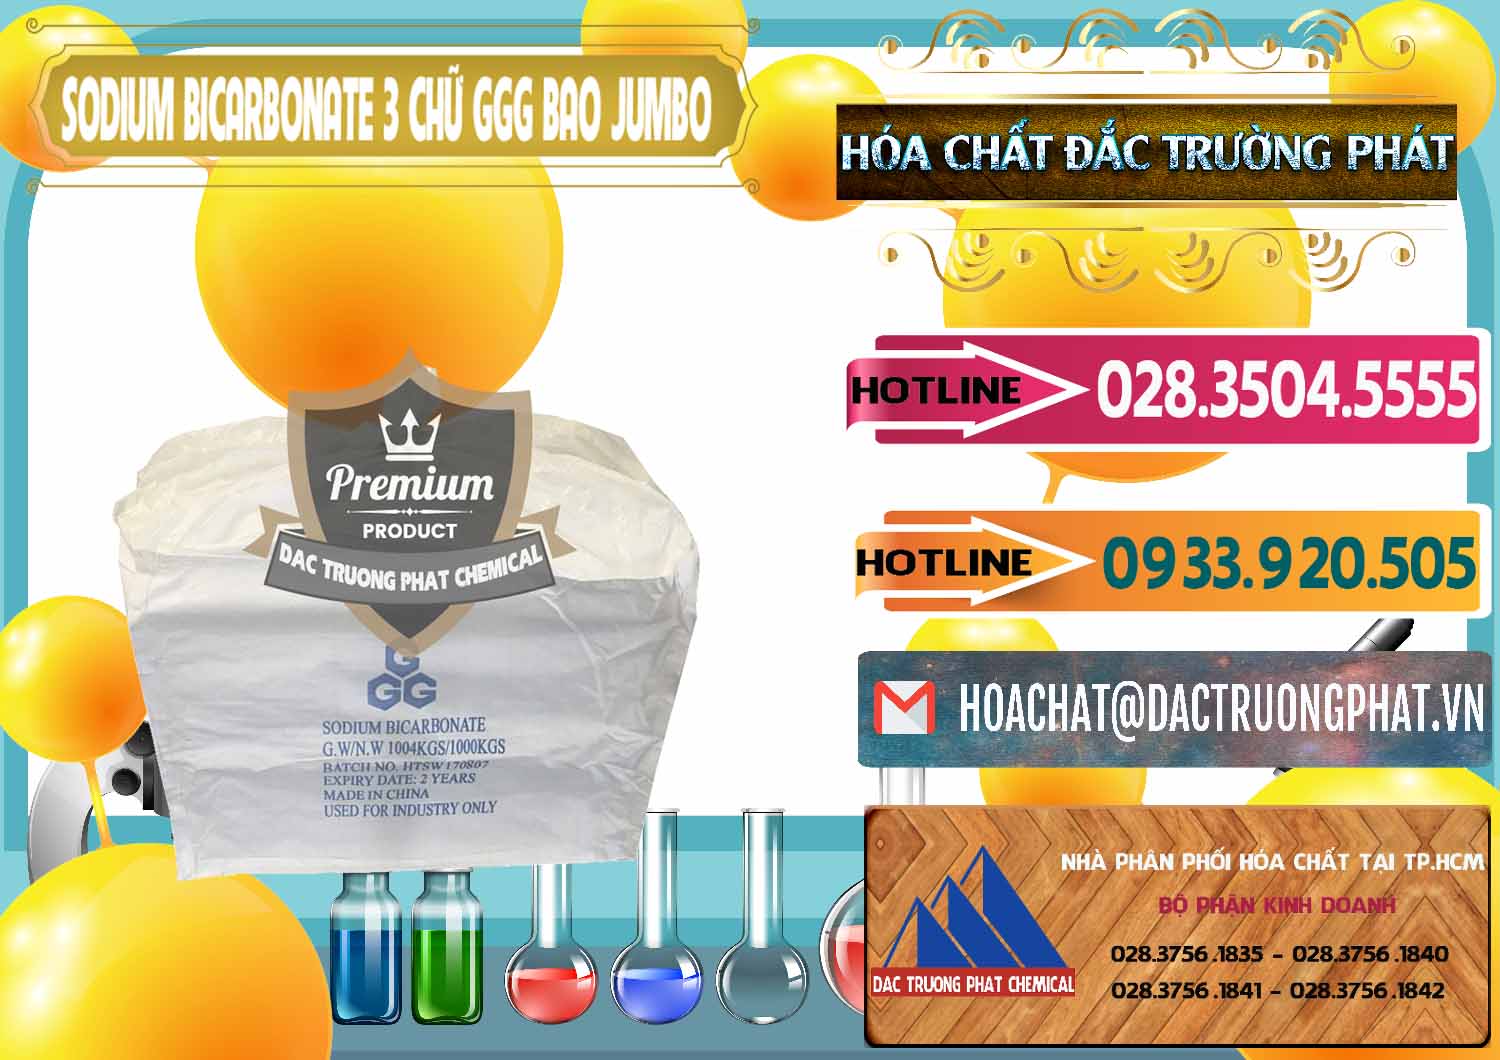 Công ty bán & phân phối Sodium Bicarbonate – Bicar NaHCO3 Food Grade 3 Chữ GGG Bao Jumbo ( Bành ) Trung Quốc China - 0260 - Đơn vị bán - cung cấp hóa chất tại TP.HCM - dactruongphat.vn